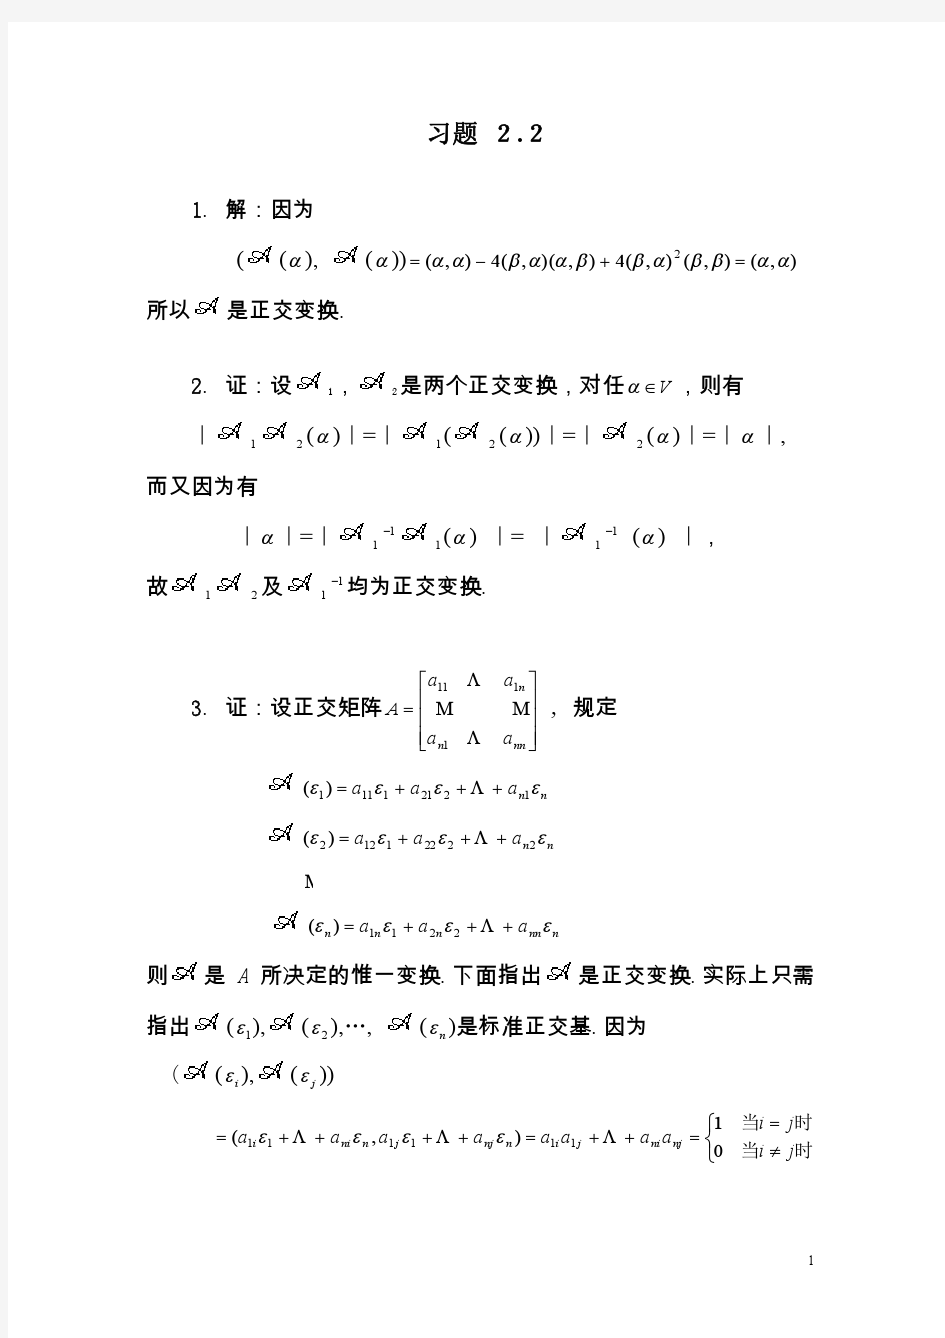 《矩阵论》习题答案,清华大学出版社,研究生教材习题 2.2